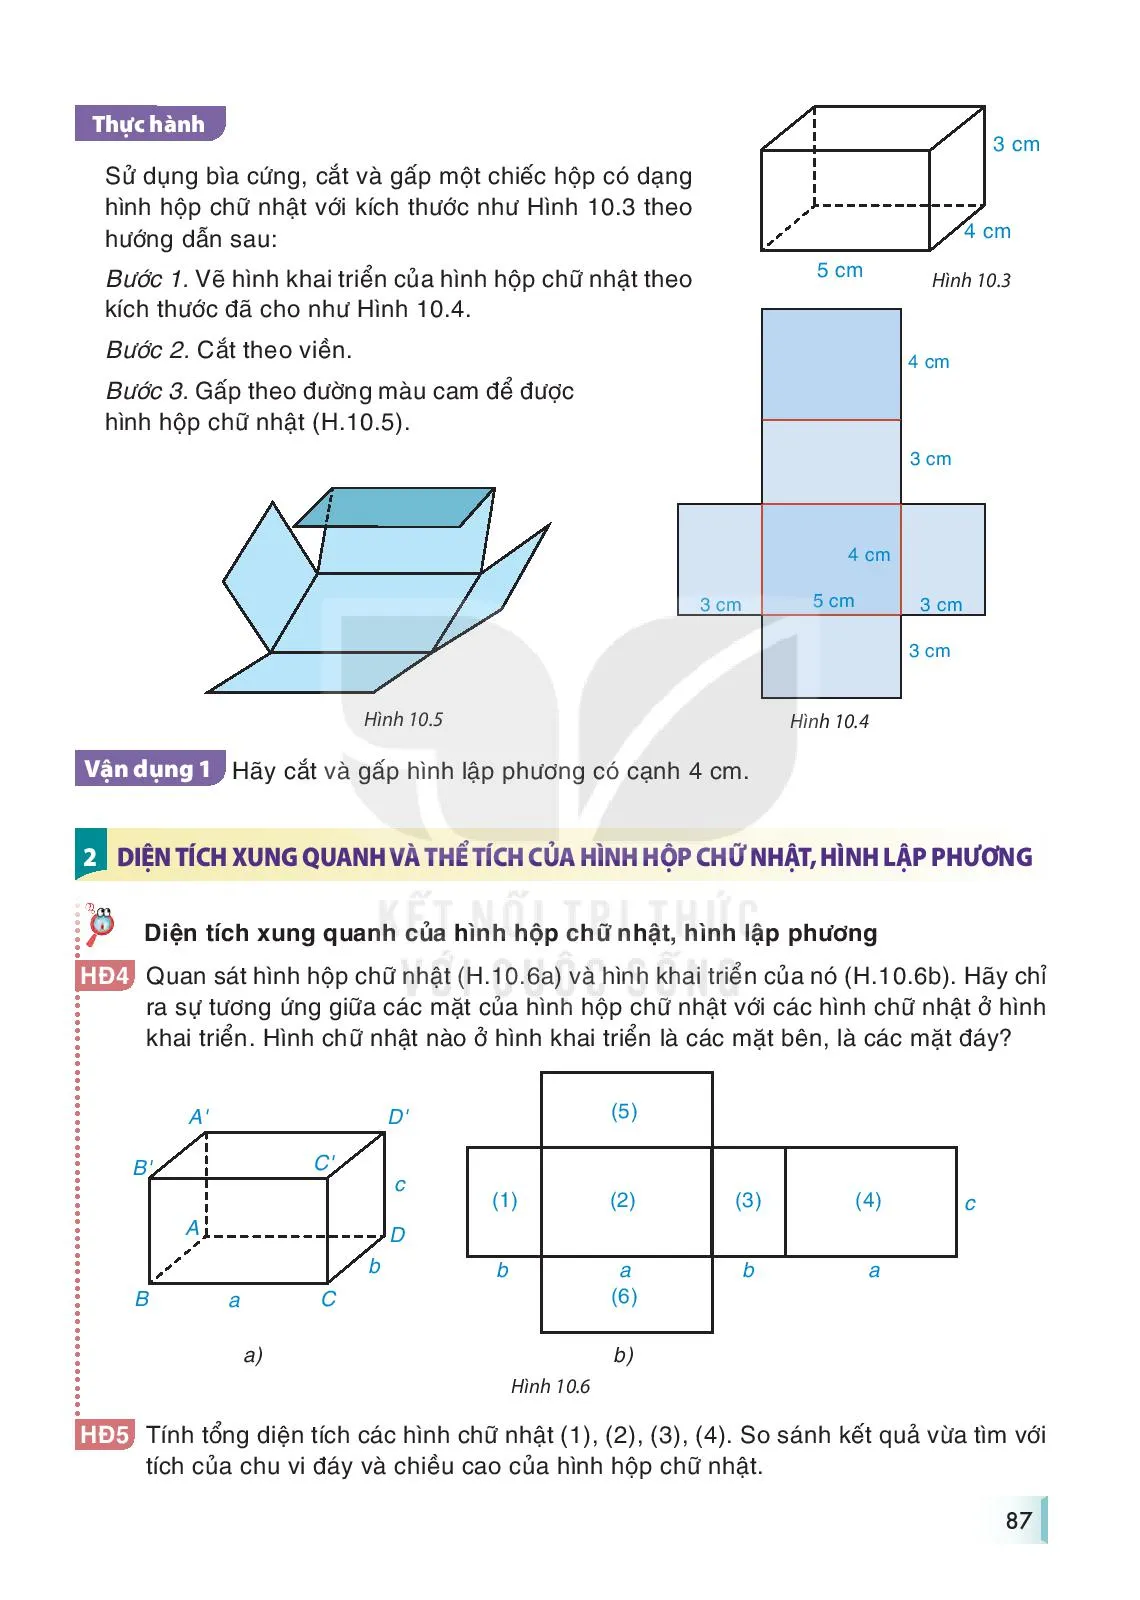 Bài 36. Hình hộp chữ nhật và hình lập phương